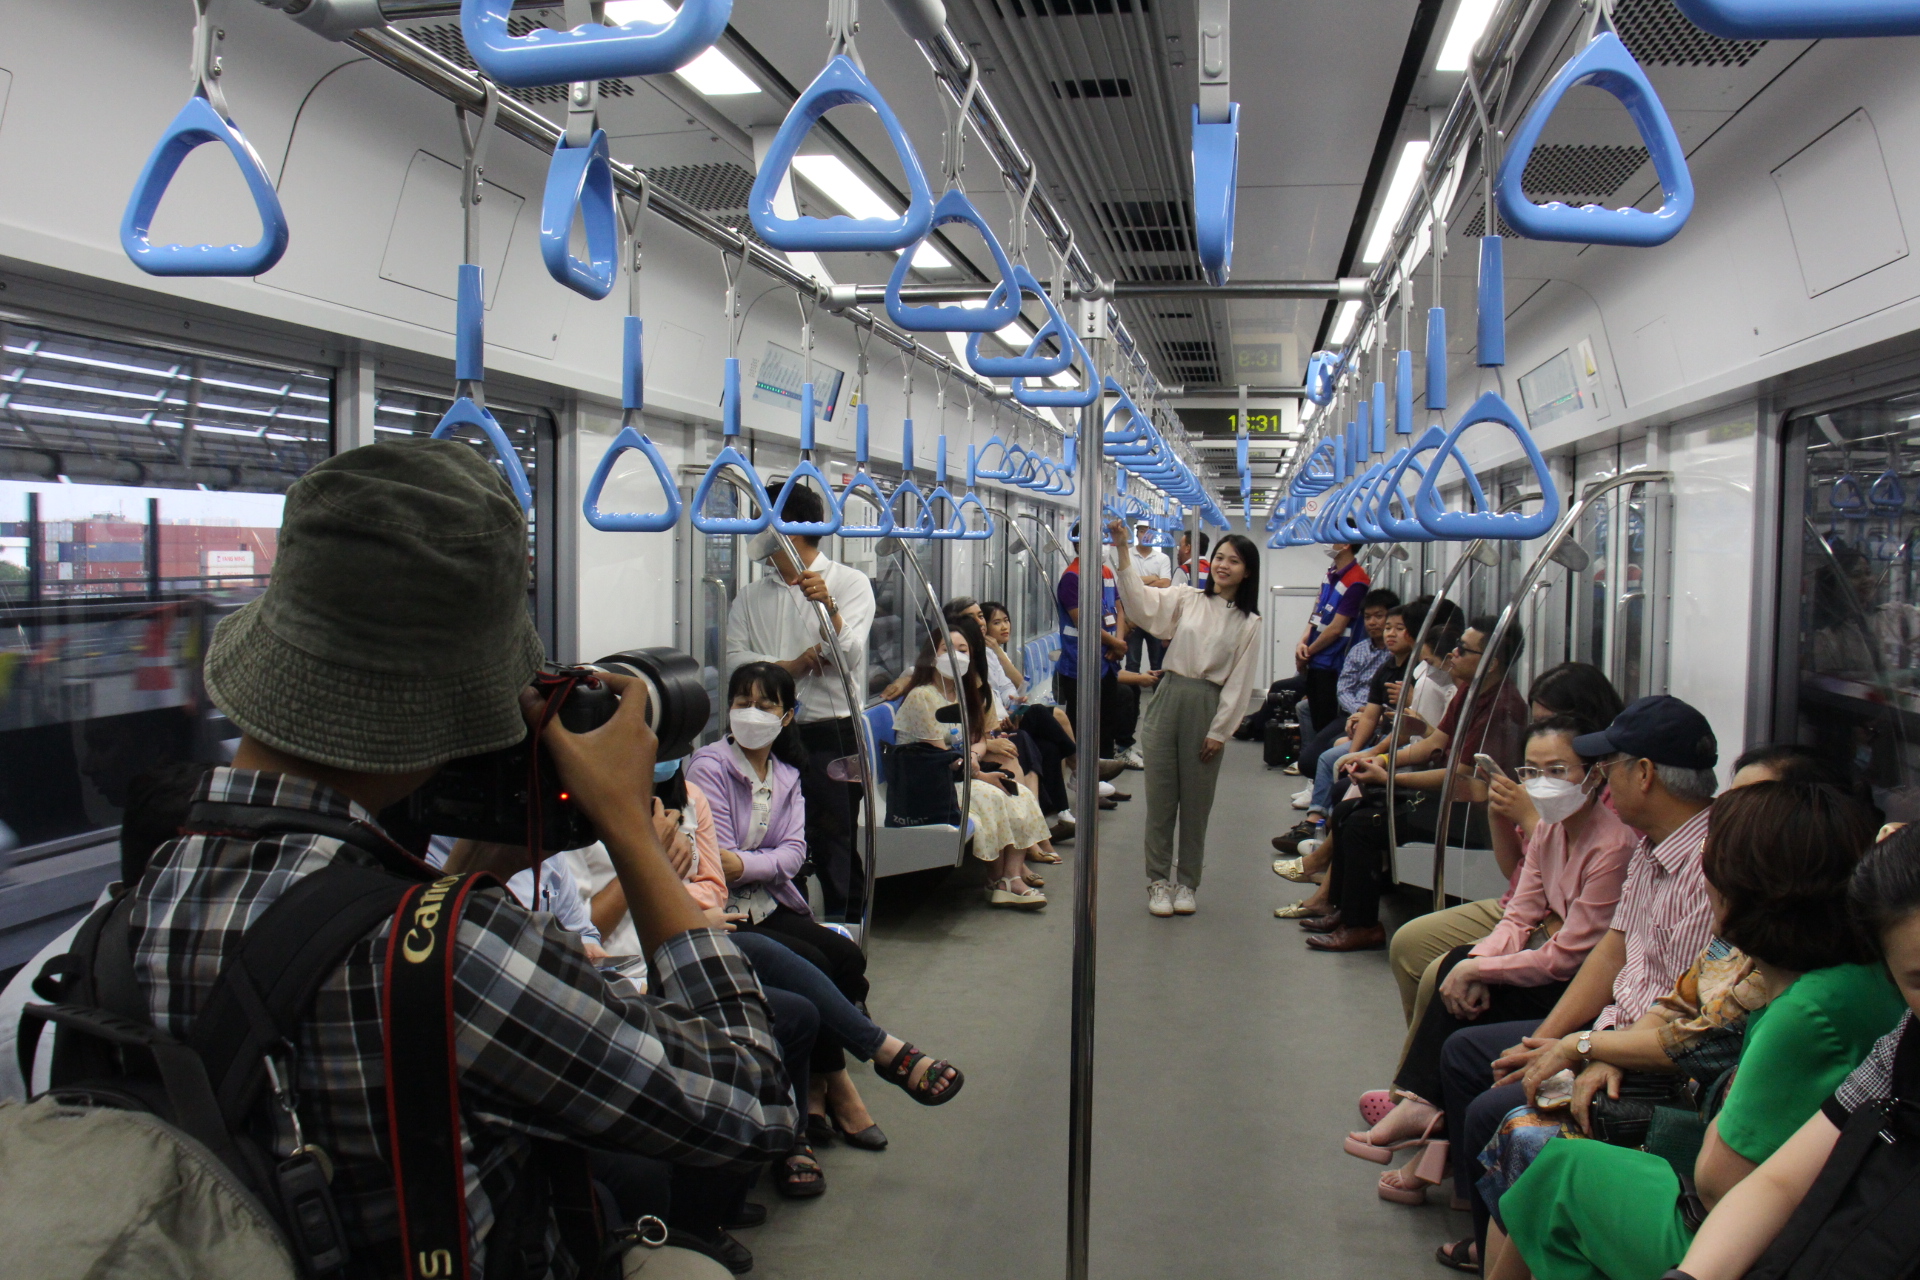 Metro số 1 chở gần 2.000 khách/ngày, chạy 20 phút từ Dĩ An đến Thảo Điền - Ảnh 5.